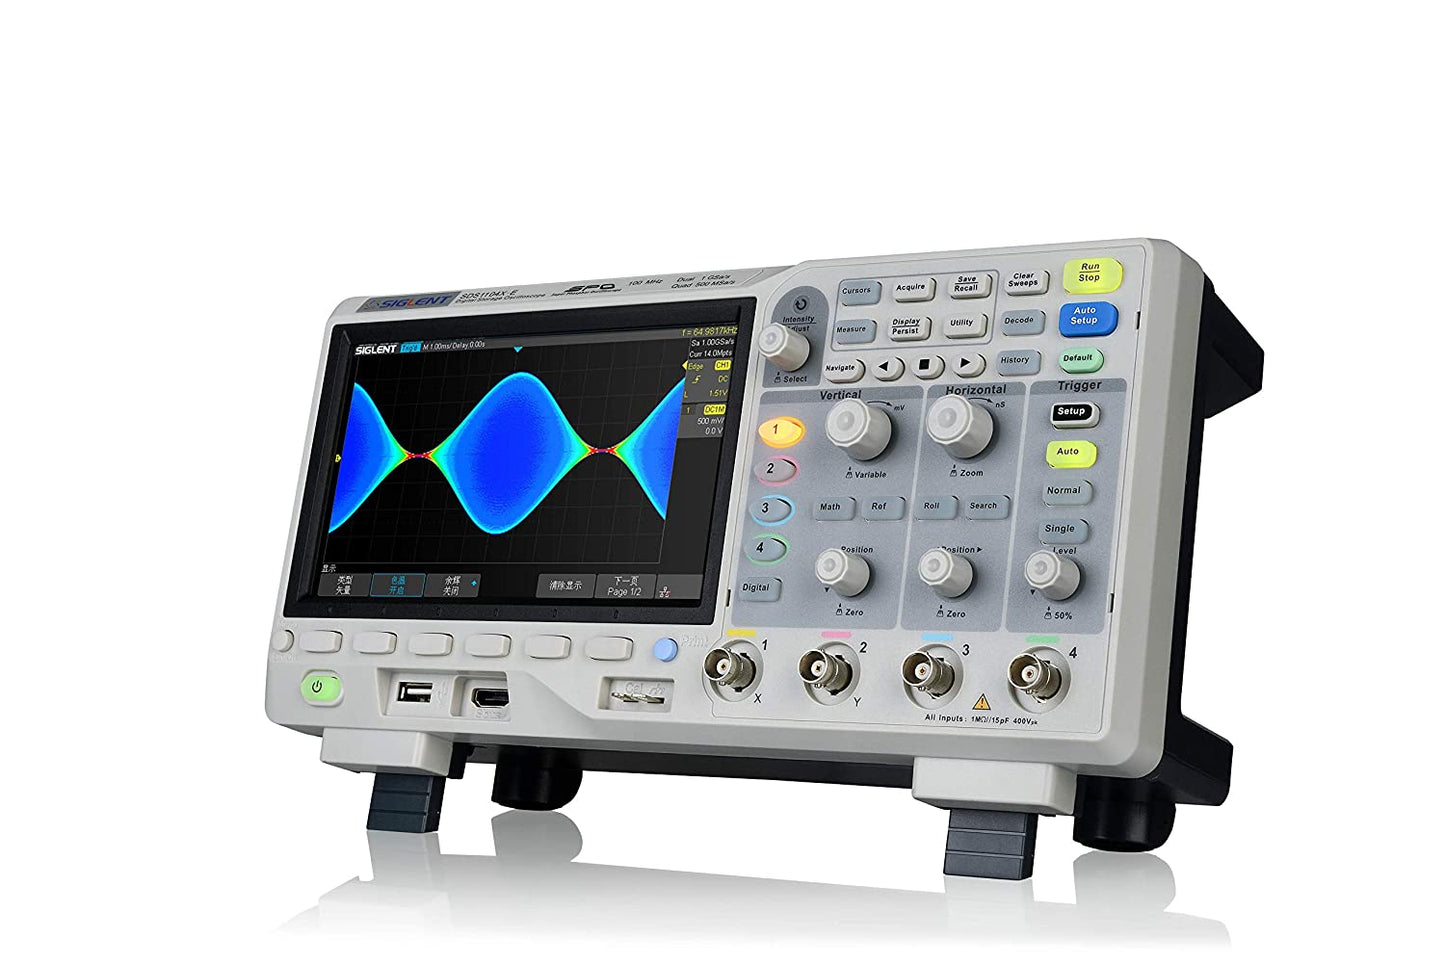 Siglent SDS1104X-E - Osciloscopio digital de 4 canales (100 MHz)